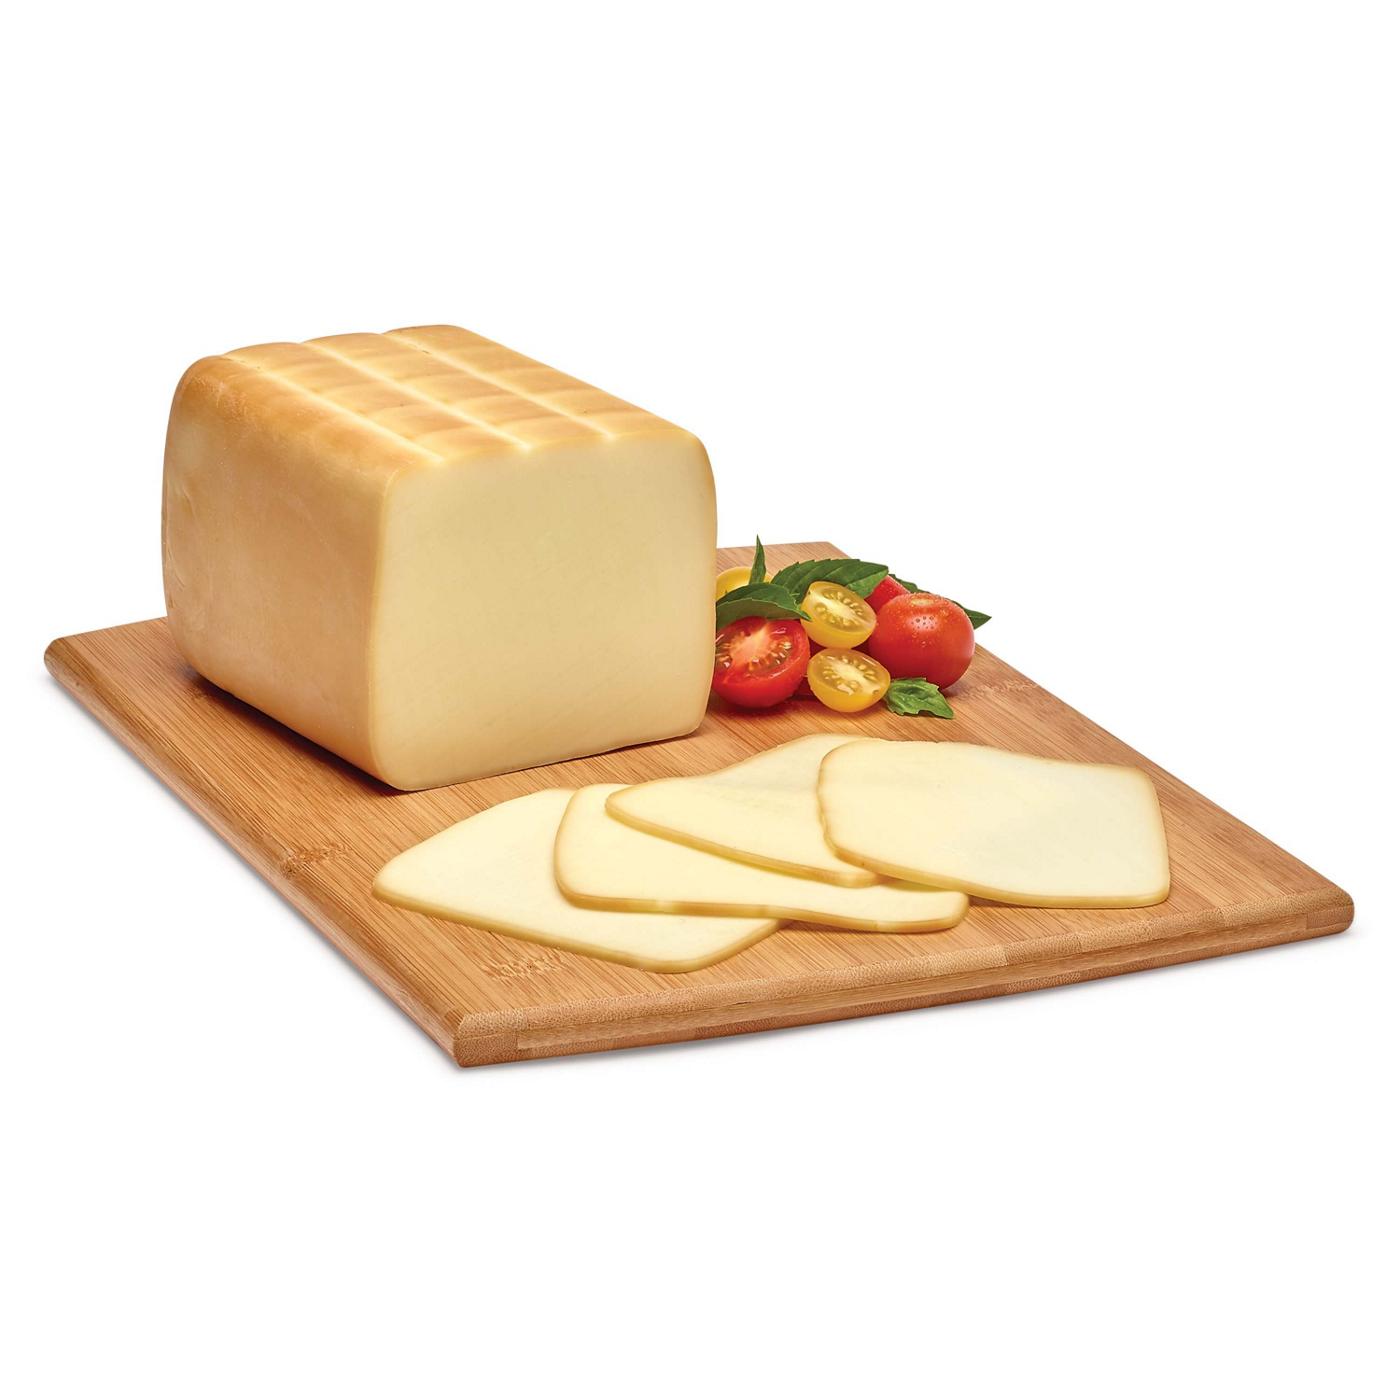 H-E-B Deli Sliced Post Oak Smoked Mozzarella Cheese; image 1 of 2